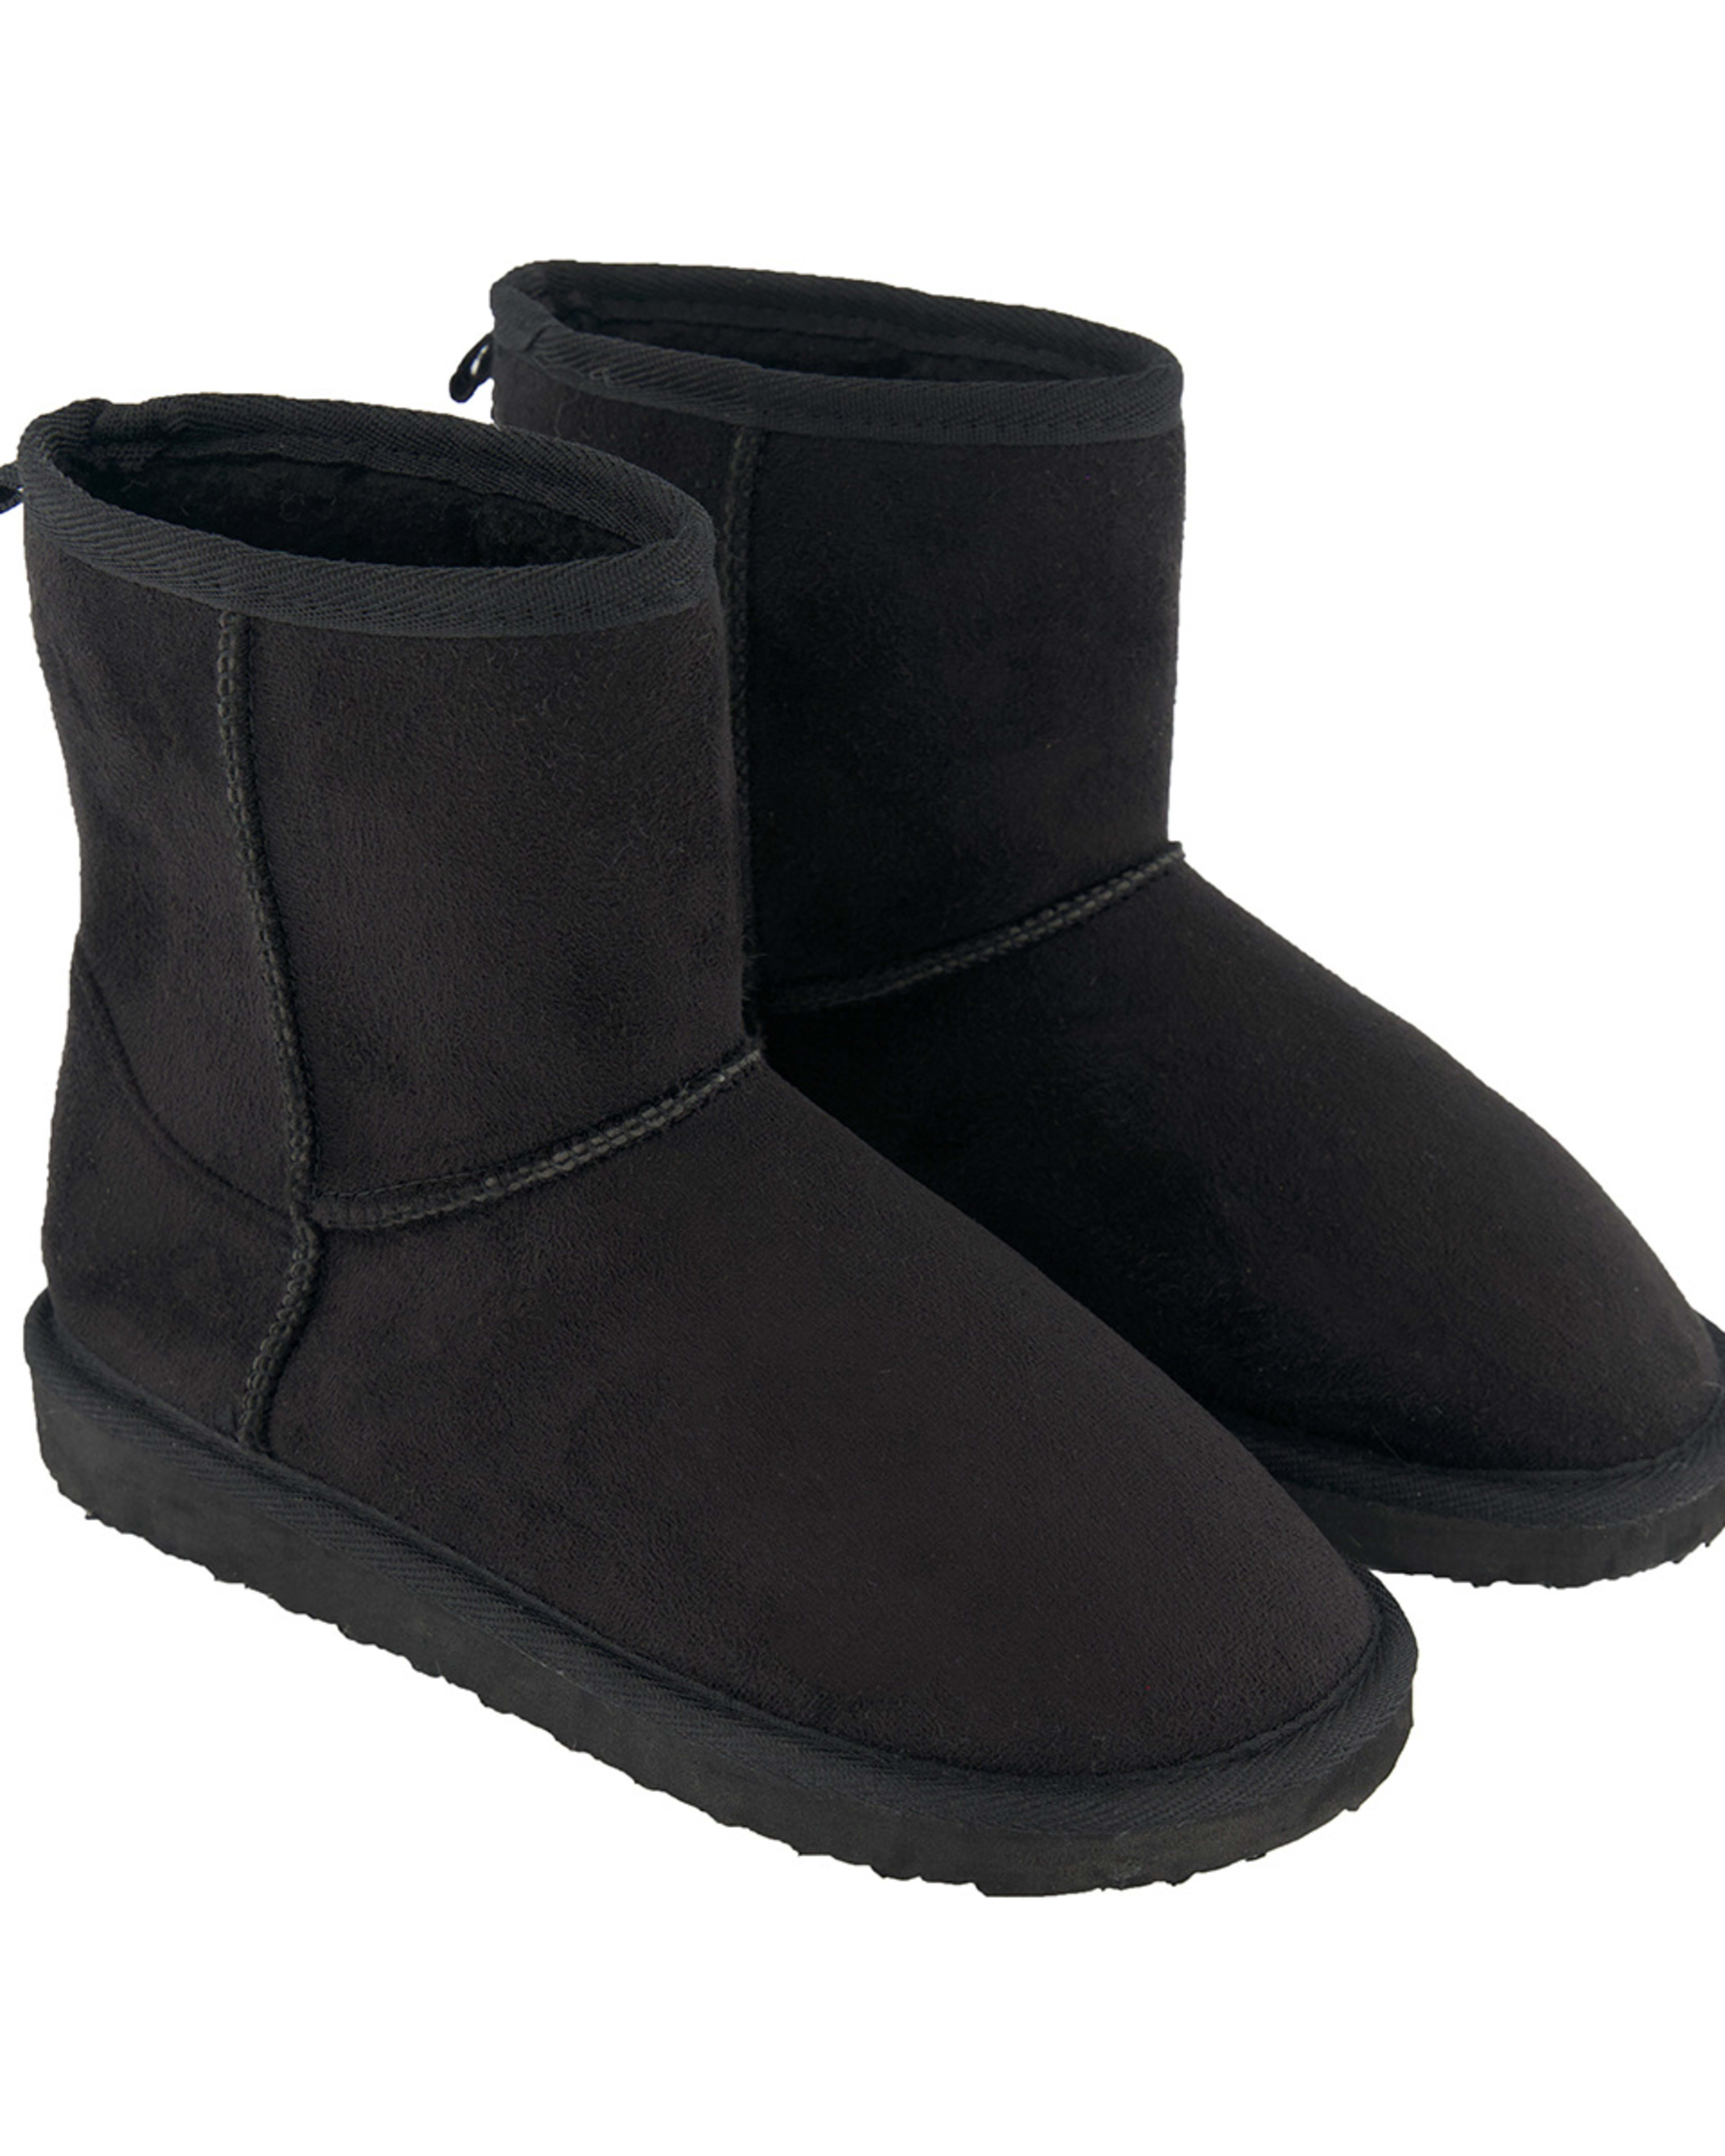 Senior Slipper Boots - Kmart